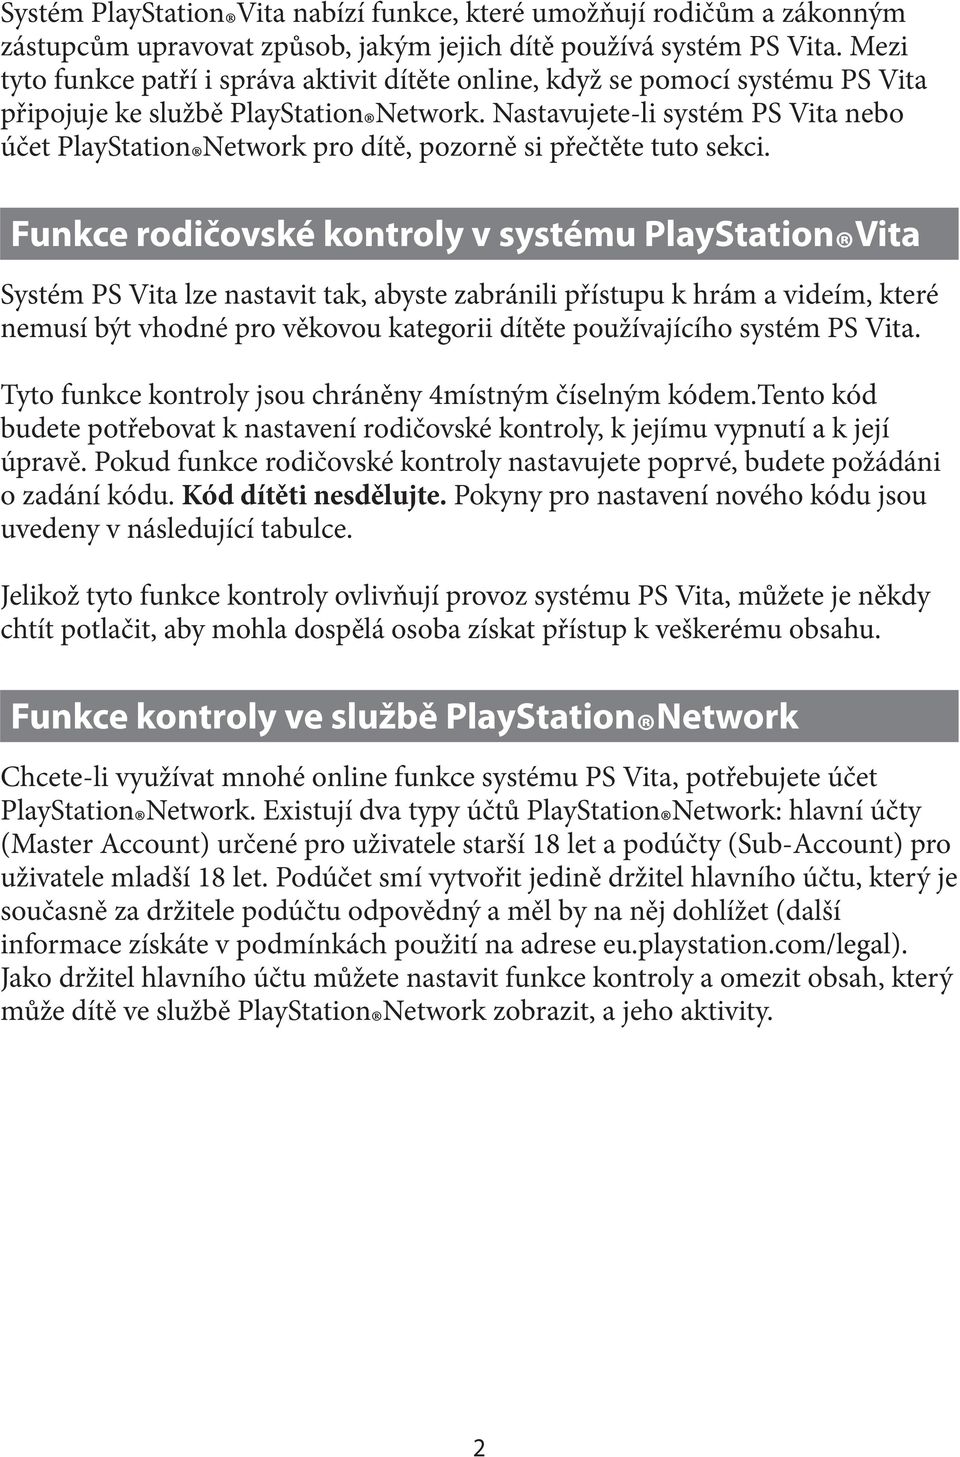 Nastavujete-li systém PS Vita nebo účet Network pro dítě, pozorně si přečtěte tuto sekci.